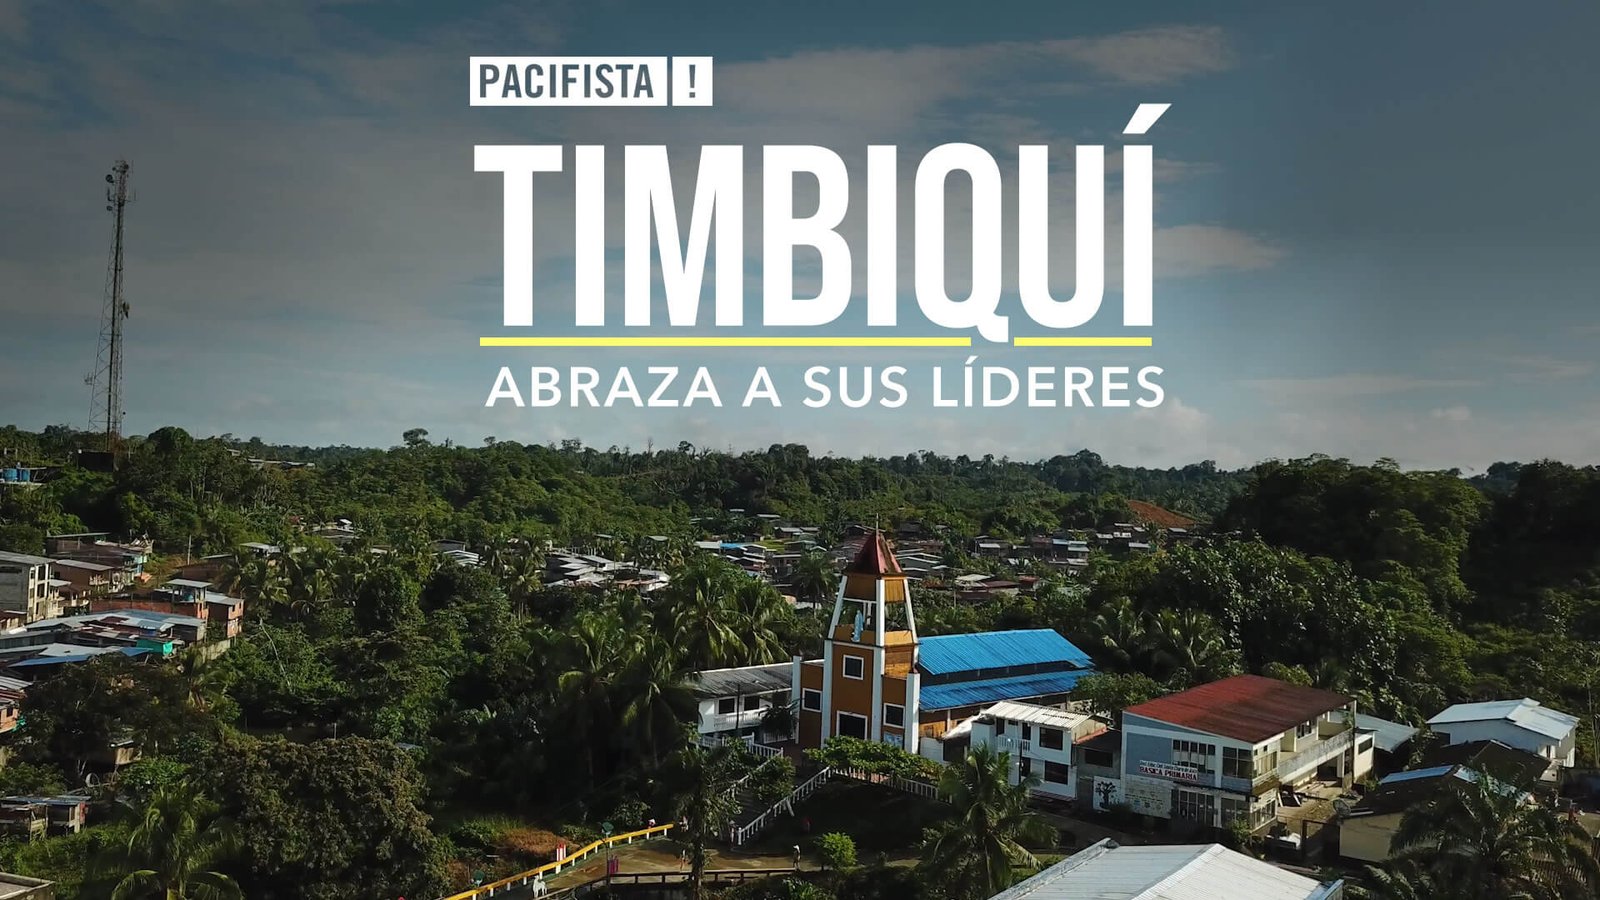 PACIFISTA! presenta: Timbiquí abraza a sus líderes